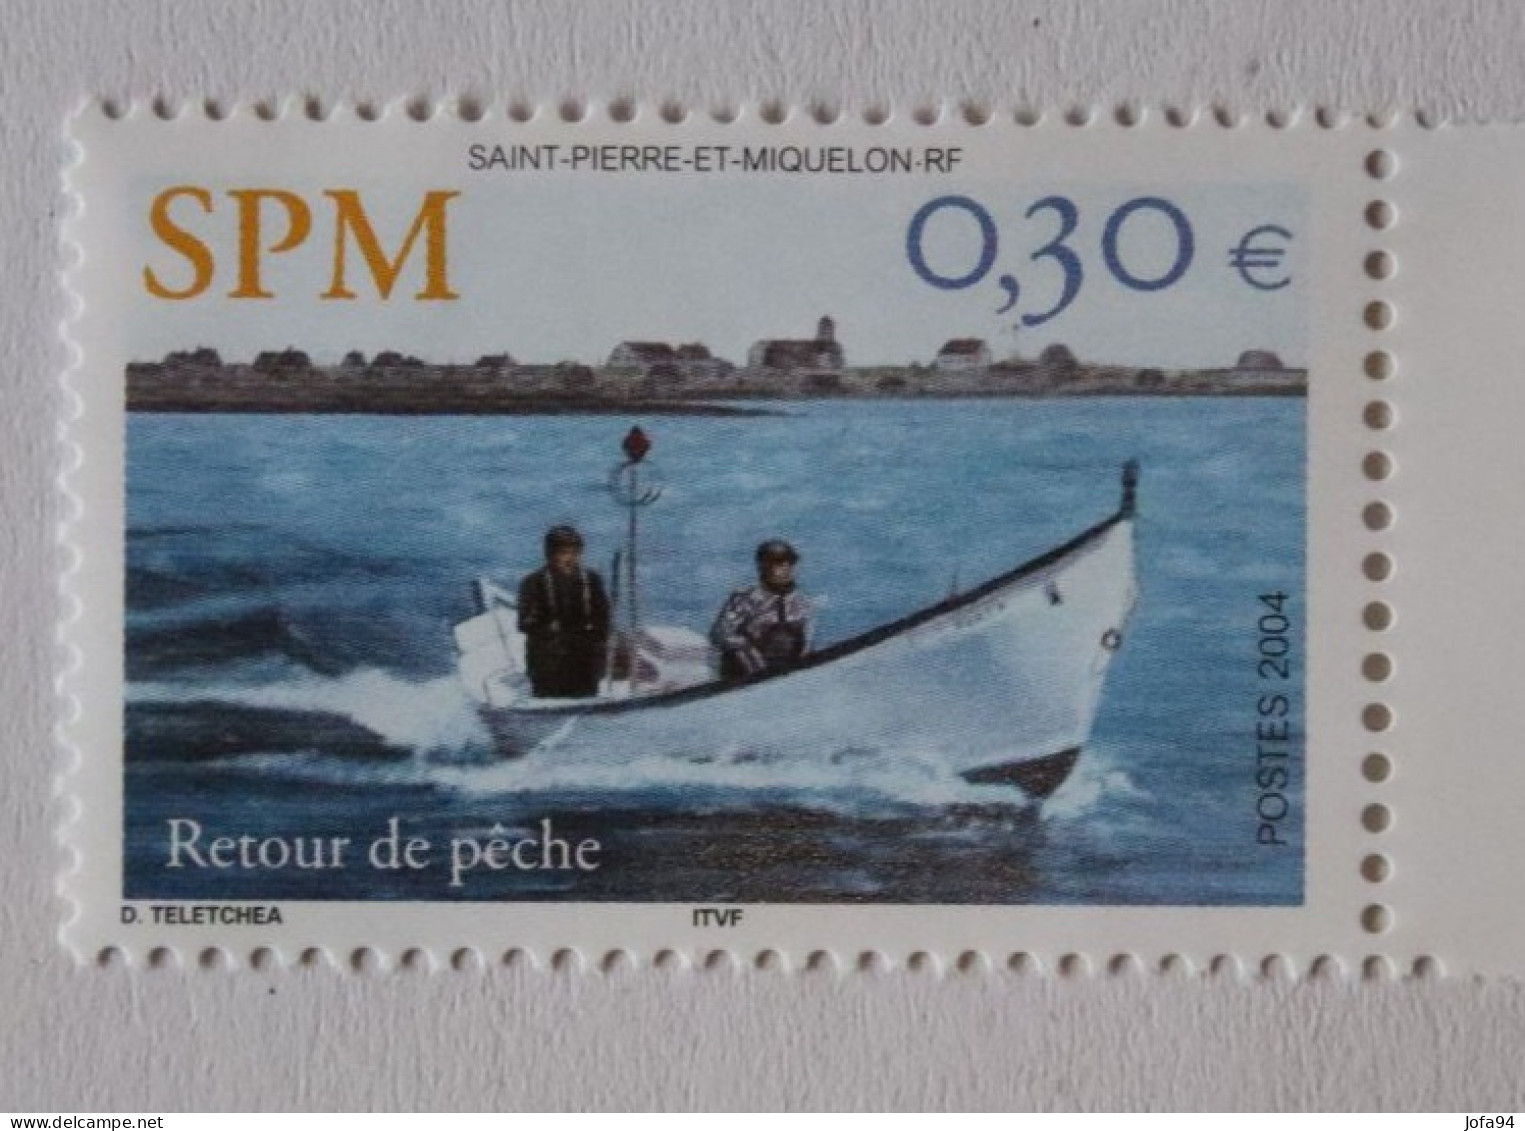 SPM 2004  Bateaux Retour De Pêche YT 815   Neuf - Unused Stamps